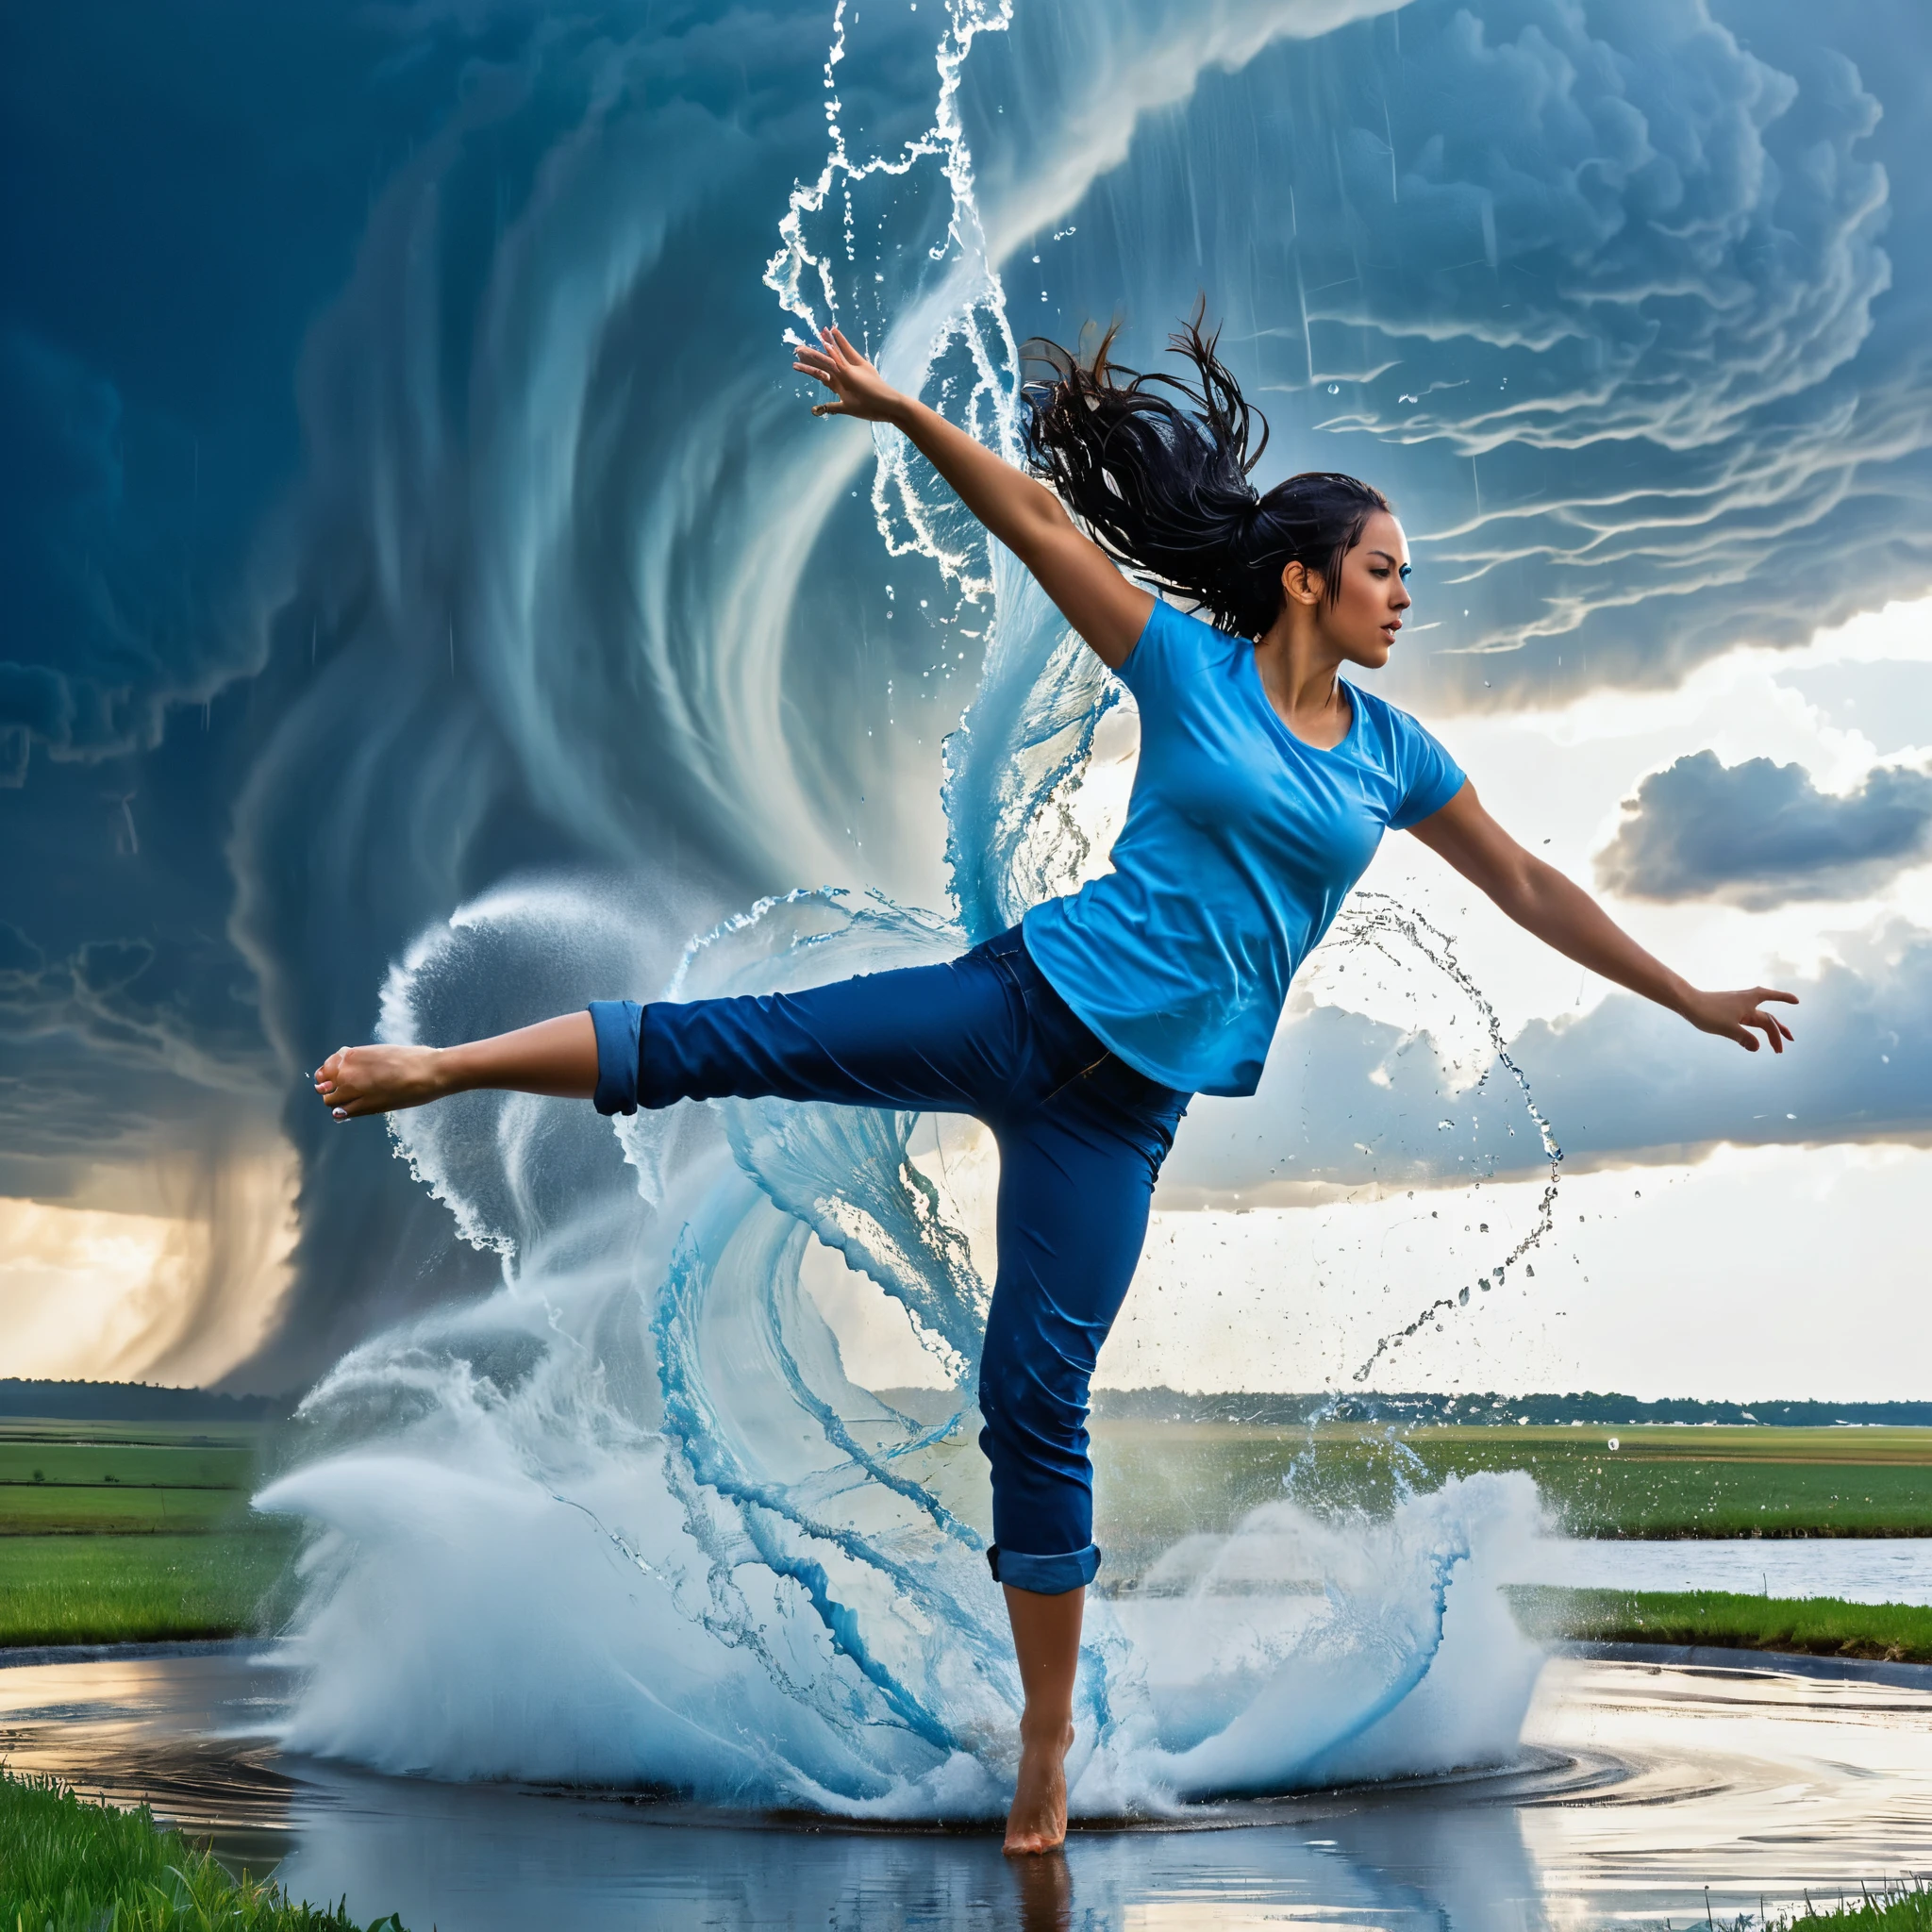 Une scène dynamique d&#39;une jeune femme aux longs, cheveux bleus flottants attachés en arrière, portant une chemise bleu clair et un pantalon retroussé bleu foncé, exécuter un coup de pied haut contre une énorme tornade d&#39;eau. La tornade d&#39;eau, avec une structure en spirale, éclate et éclabousse de façon spectaculaire lors de l&#39;impact avec son pied. Le décor est une zone ouverte avec un ciel bleu clair et quelques nuages en arrière-plan. La lumière du soleil se reflète sur les gouttelettes d&#39;eau, créer un effet scintillant. La scène globale transmet un sentiment de force, action, et fluidité. photo hyper réaliste, Couleurs vives, 16k